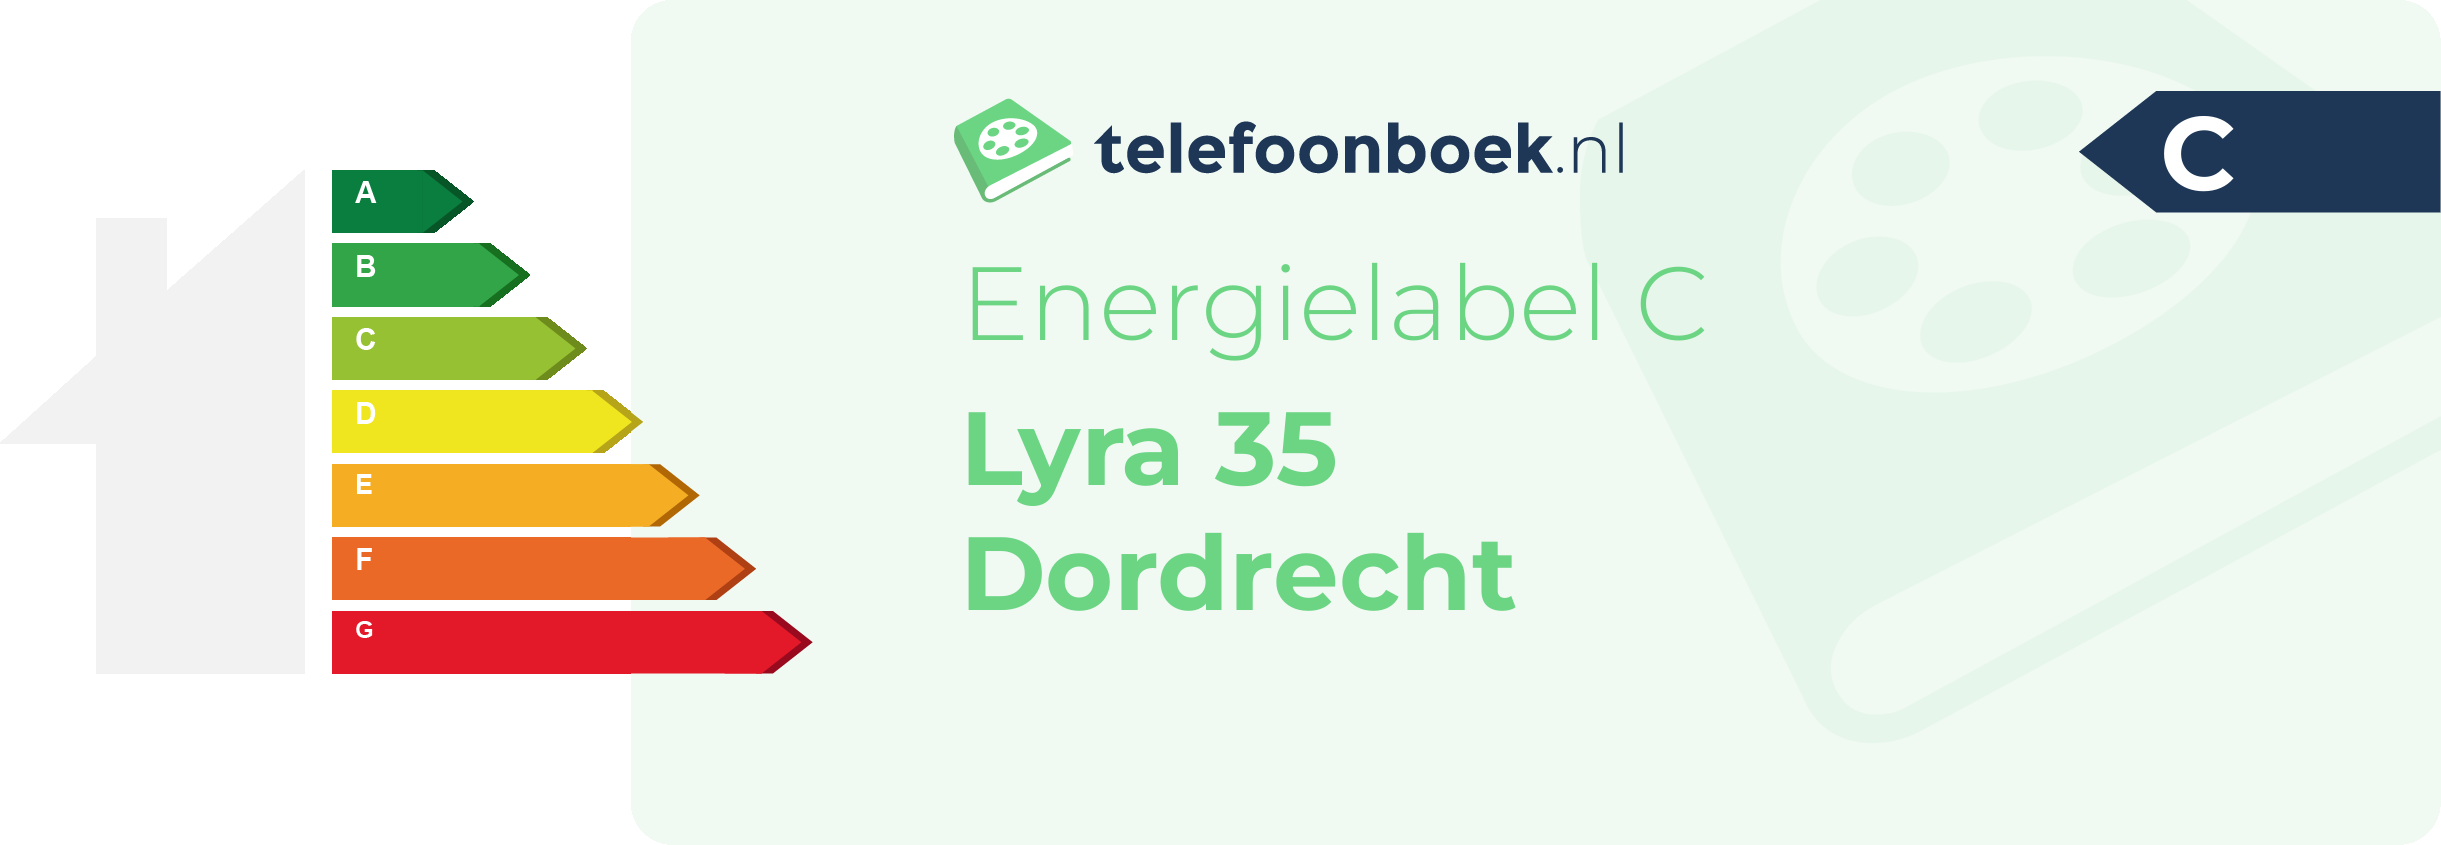 Energielabel Lyra 35 Dordrecht